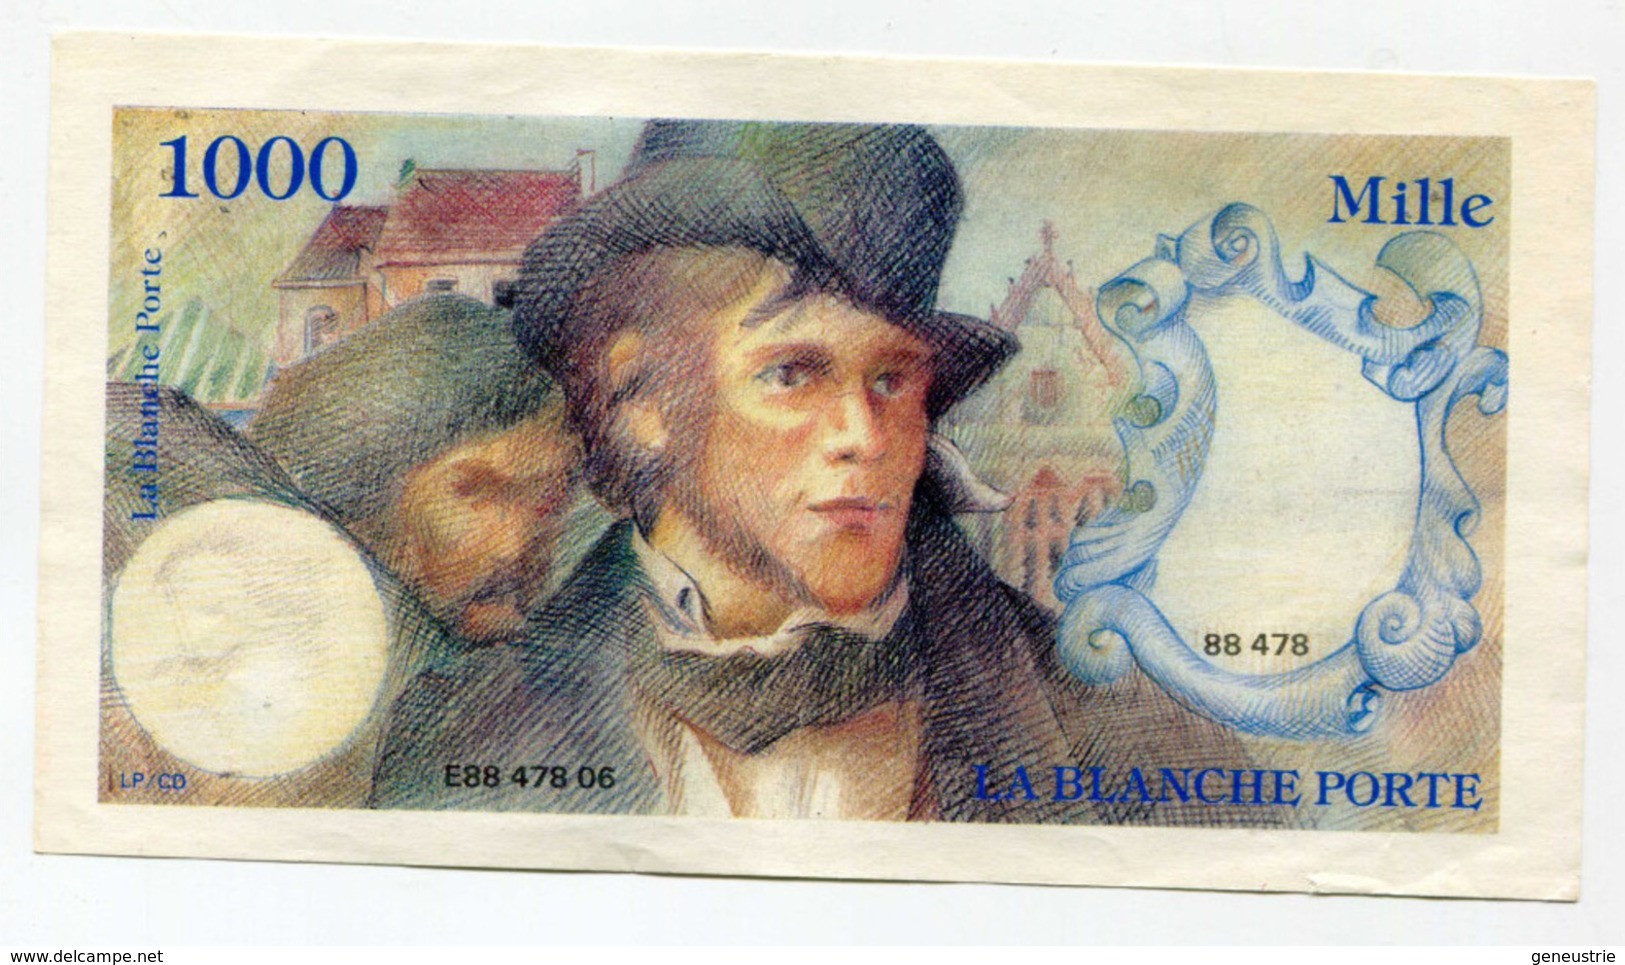 Billet Publicitaire De 1000 Francs Inspiré De Delacroix "La Blanche Porte" French Bank Note - Ficción & Especímenes